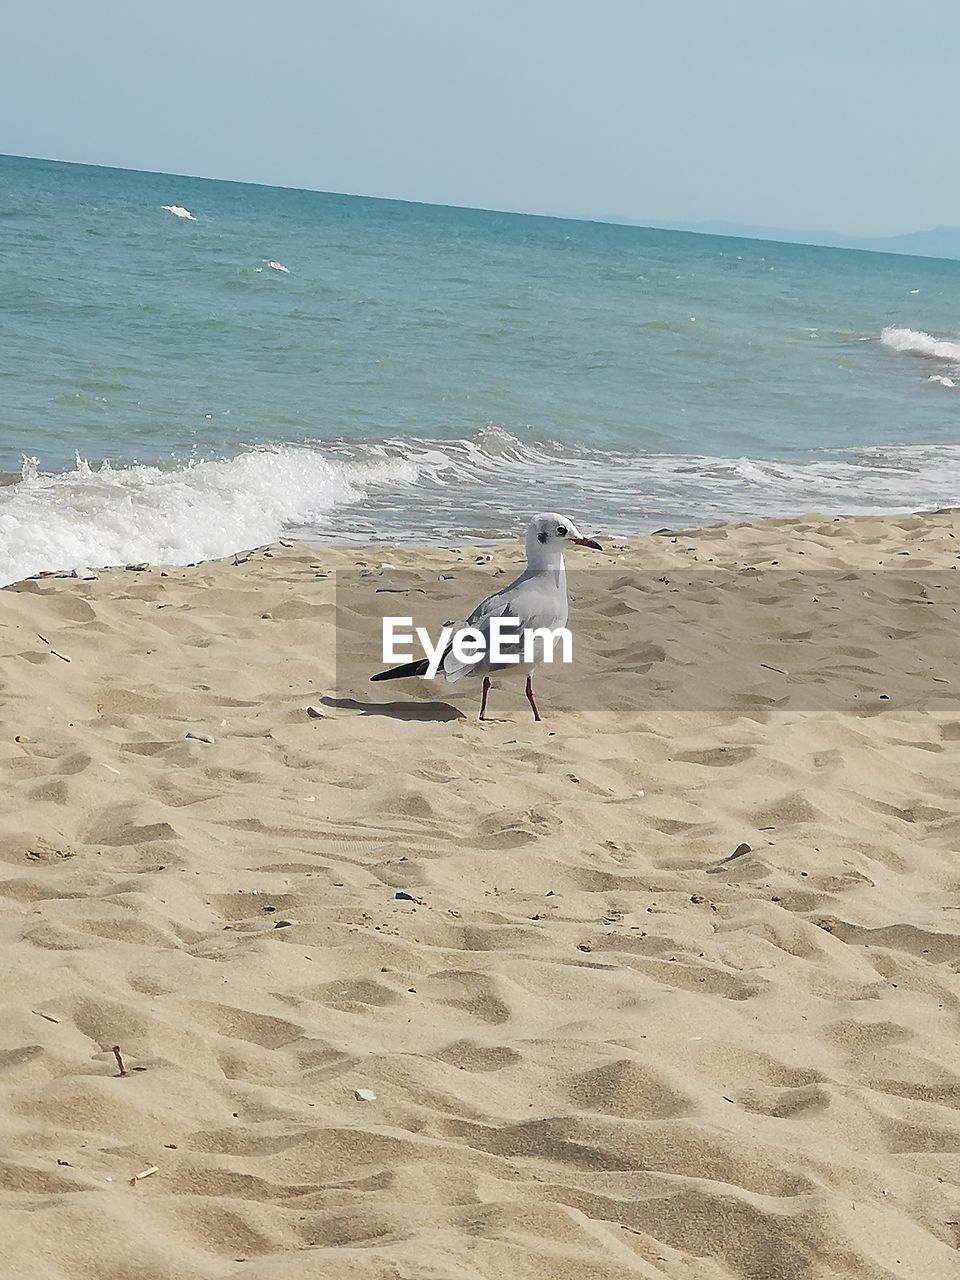 SEAGULLS ON A BEACH